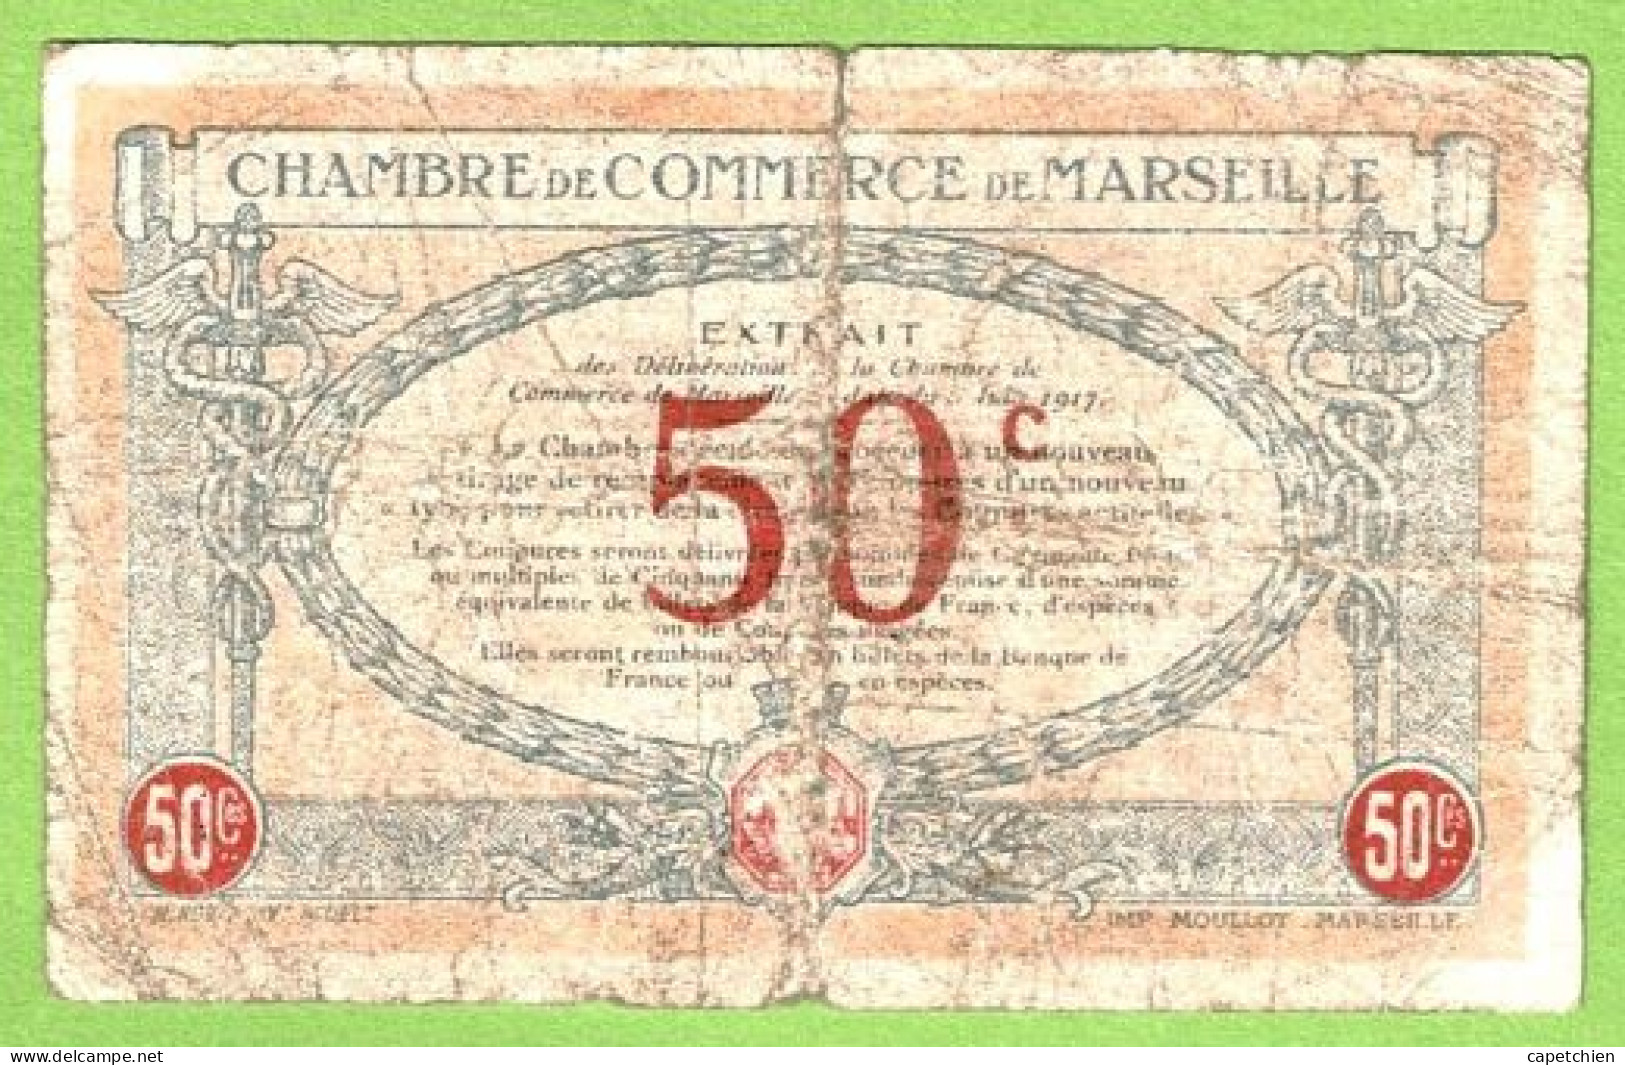 FRANCE / CHAMBRE De COMMERCE / MARSEILLE / 50 CENTIMES / 1917 / N° 57178 / SERIE C - R - Camera Di Commercio